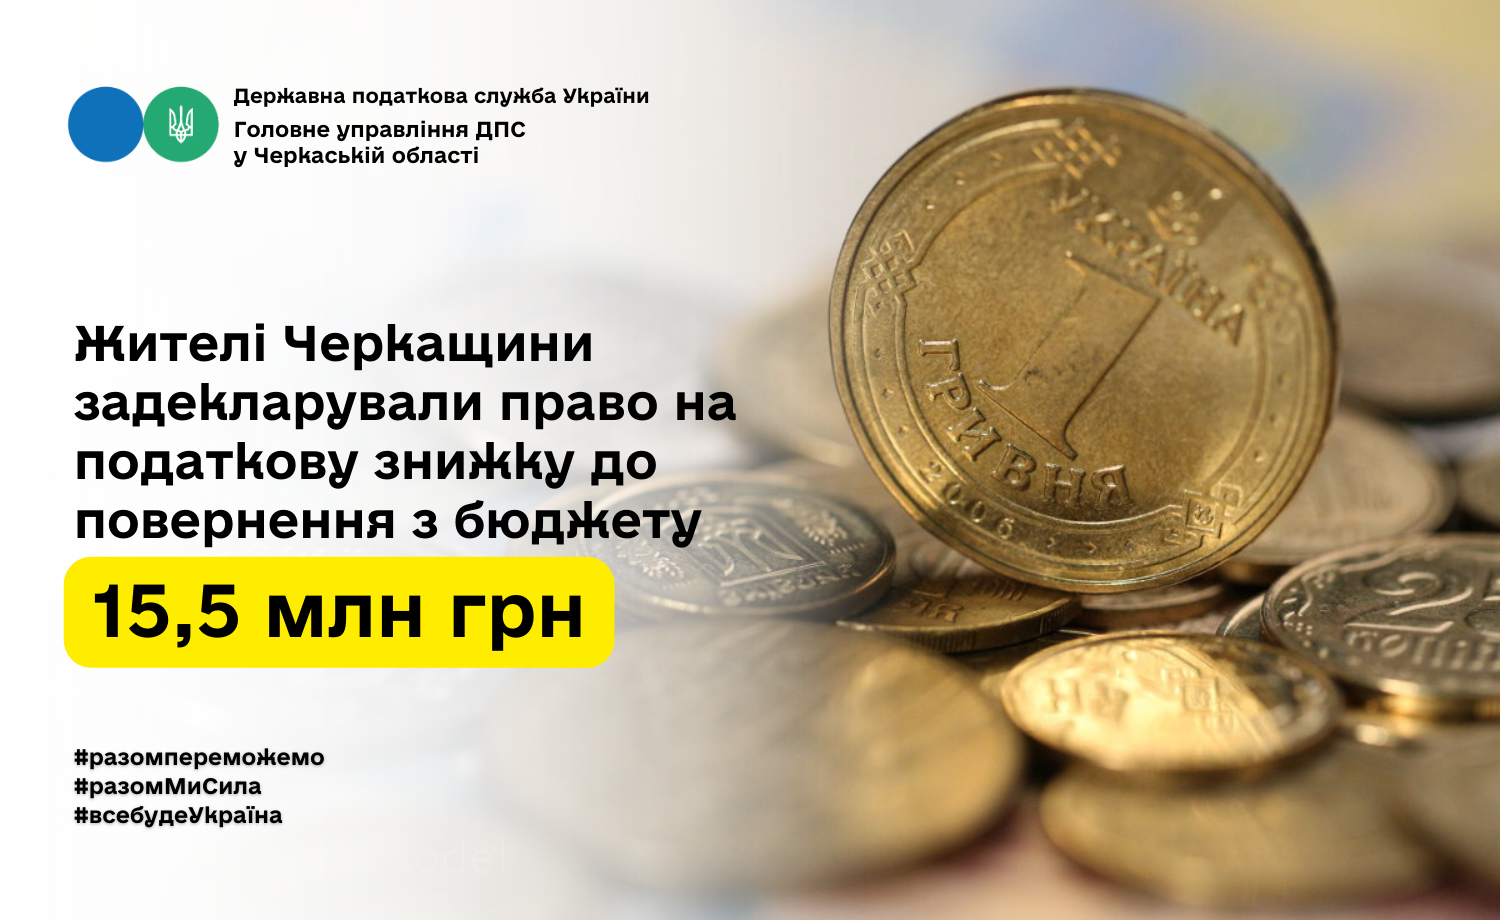 Жителі Черкащини задекларували право на податкову знижку до повернення з бюджету 15,5 млн грн